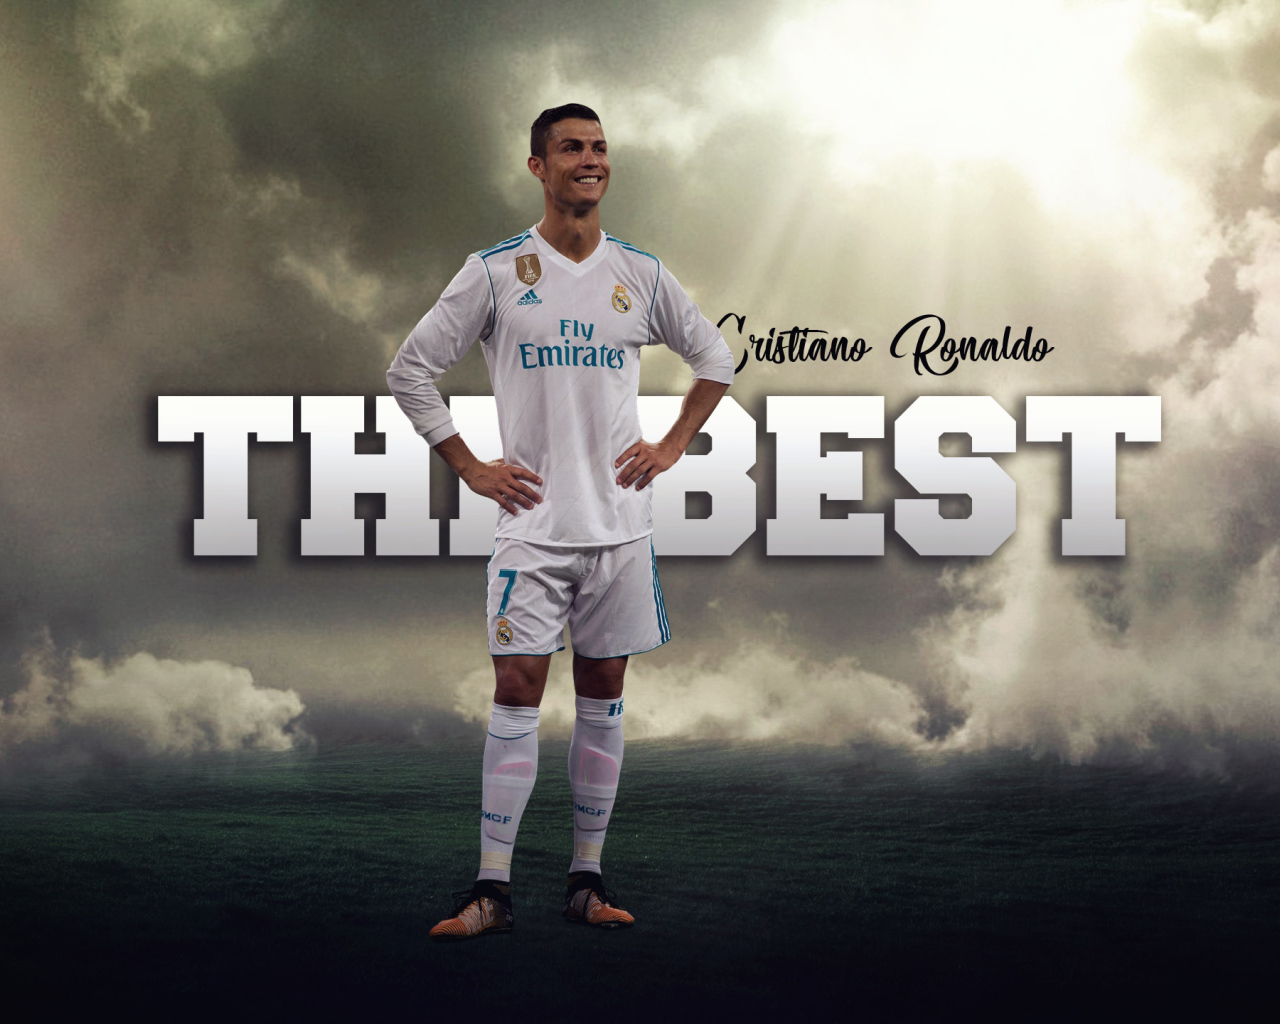 Популярный португальский футболист Криштиану Роналду на фоне надписи  The Best